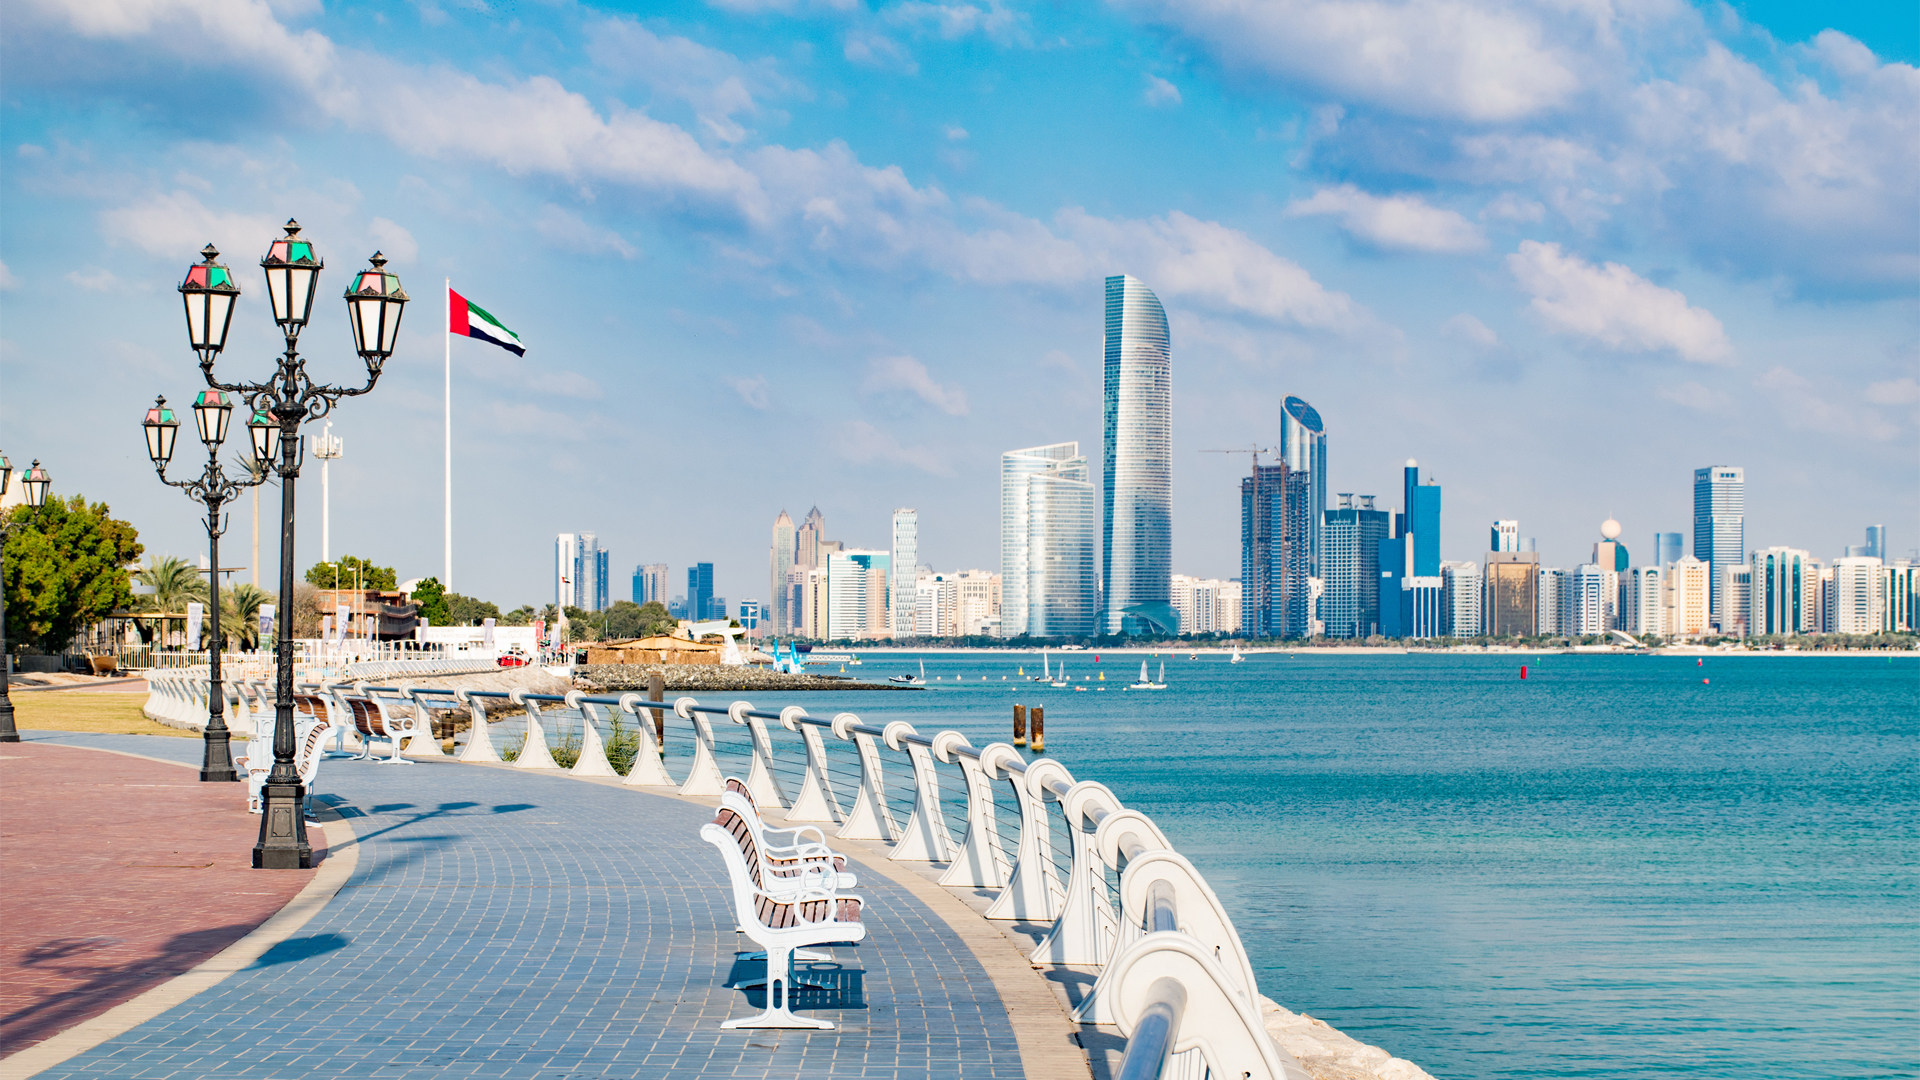 Abu Dhabi in the United Arab Emirates for Hero Box